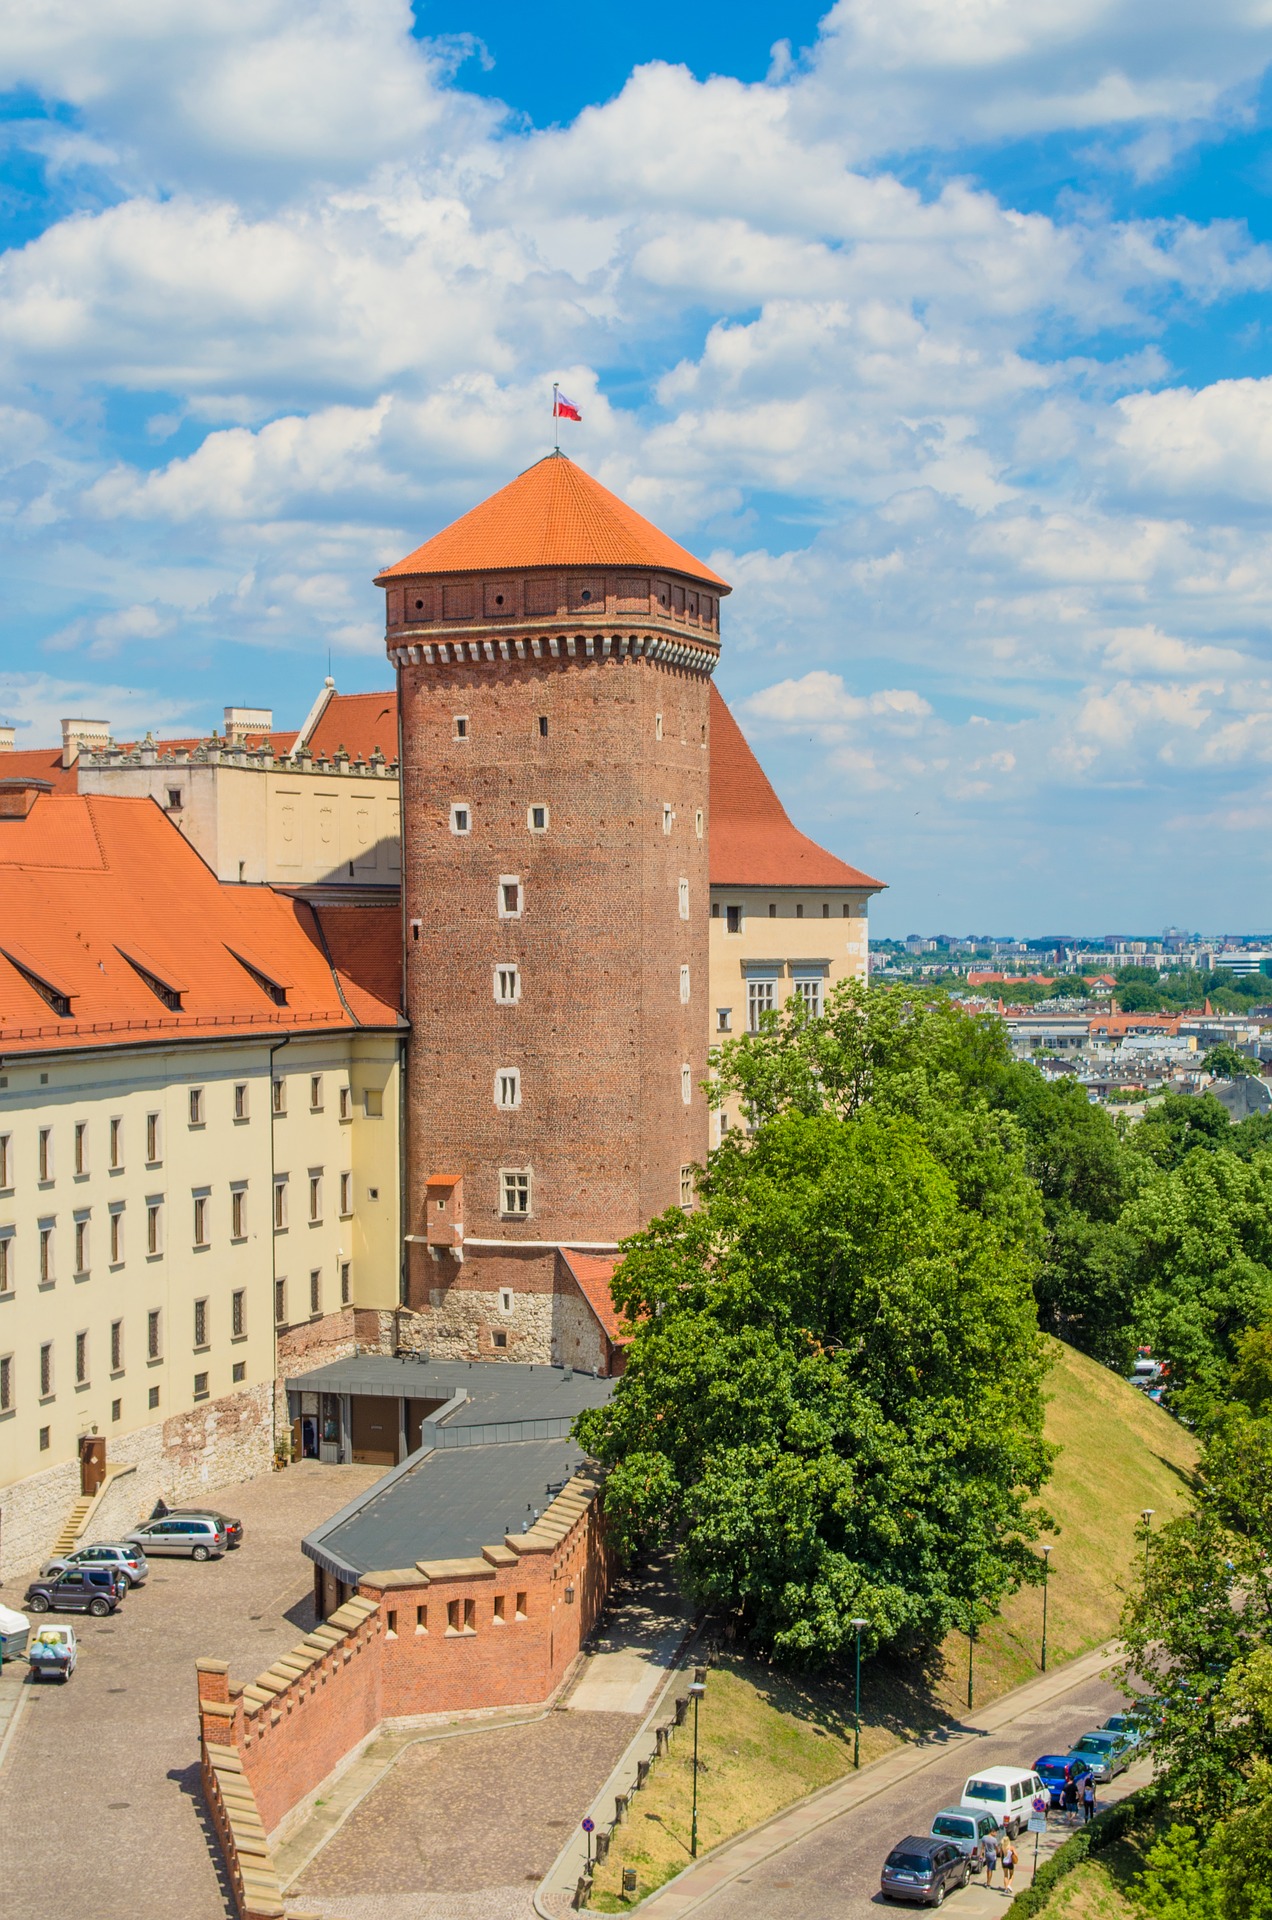 Wycieczka do Krakowa - czy warto zwiedzać muzea i wystawy?